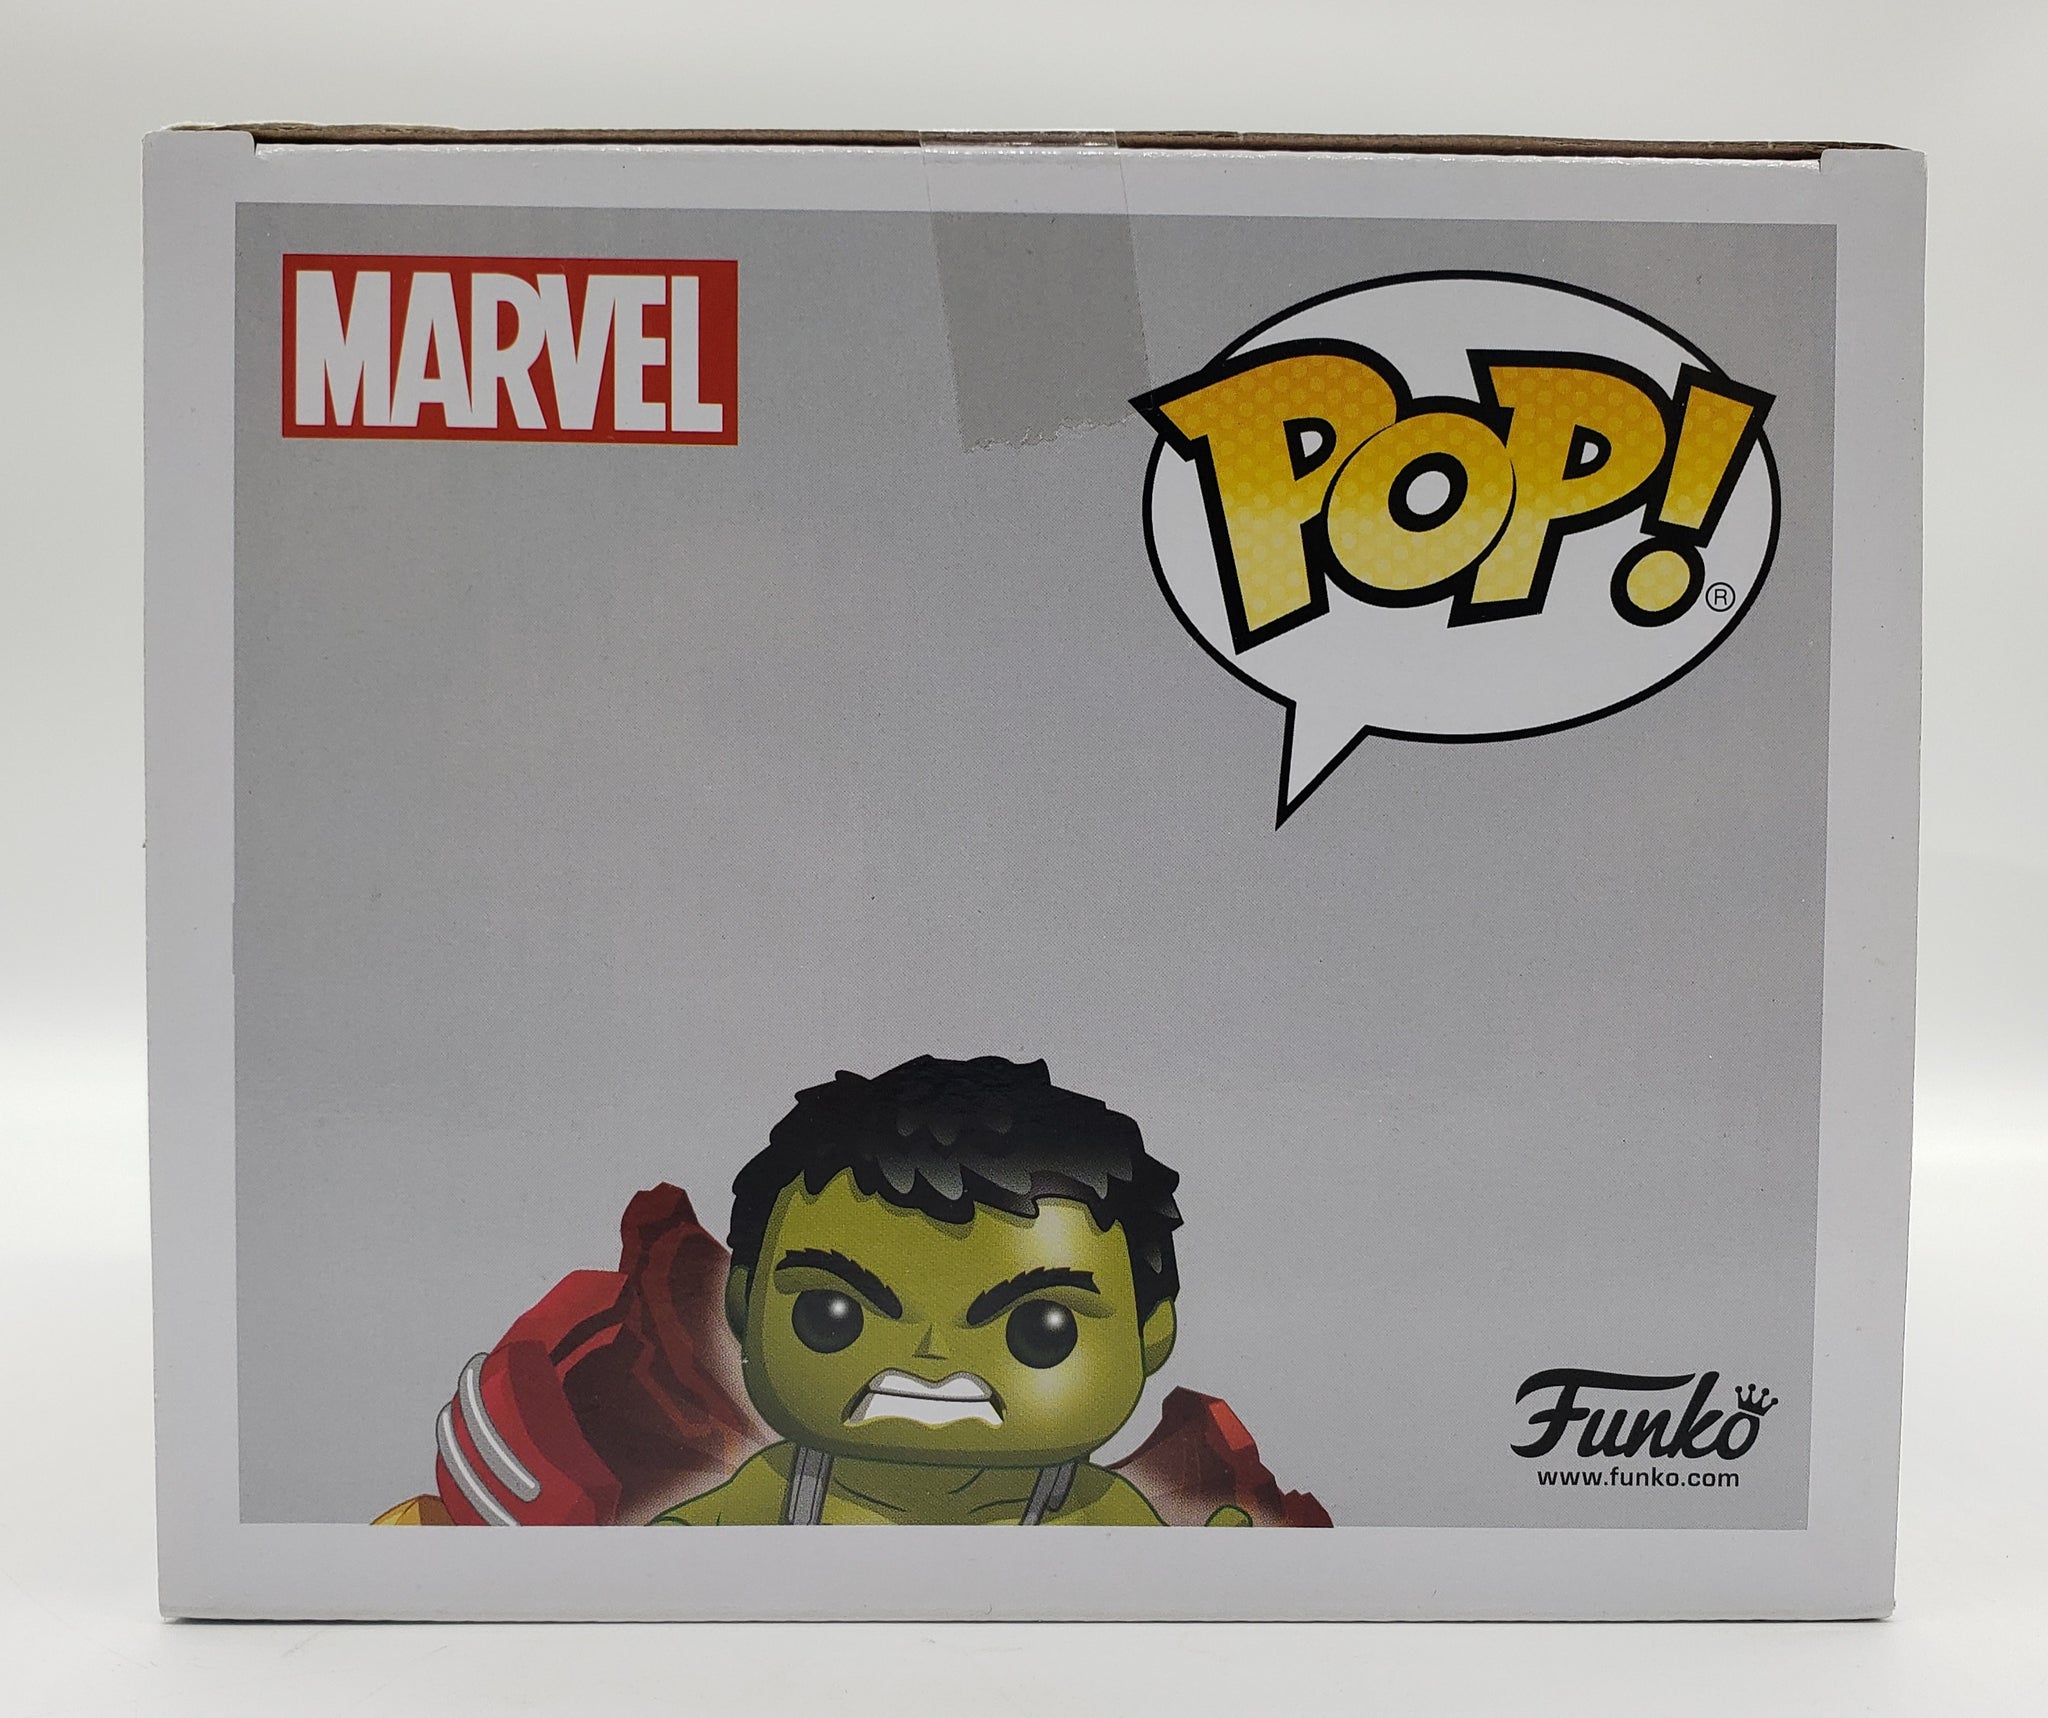 Funko Pop! Marvel Avengers: Infinity War GameStop Exclusive 6-inch